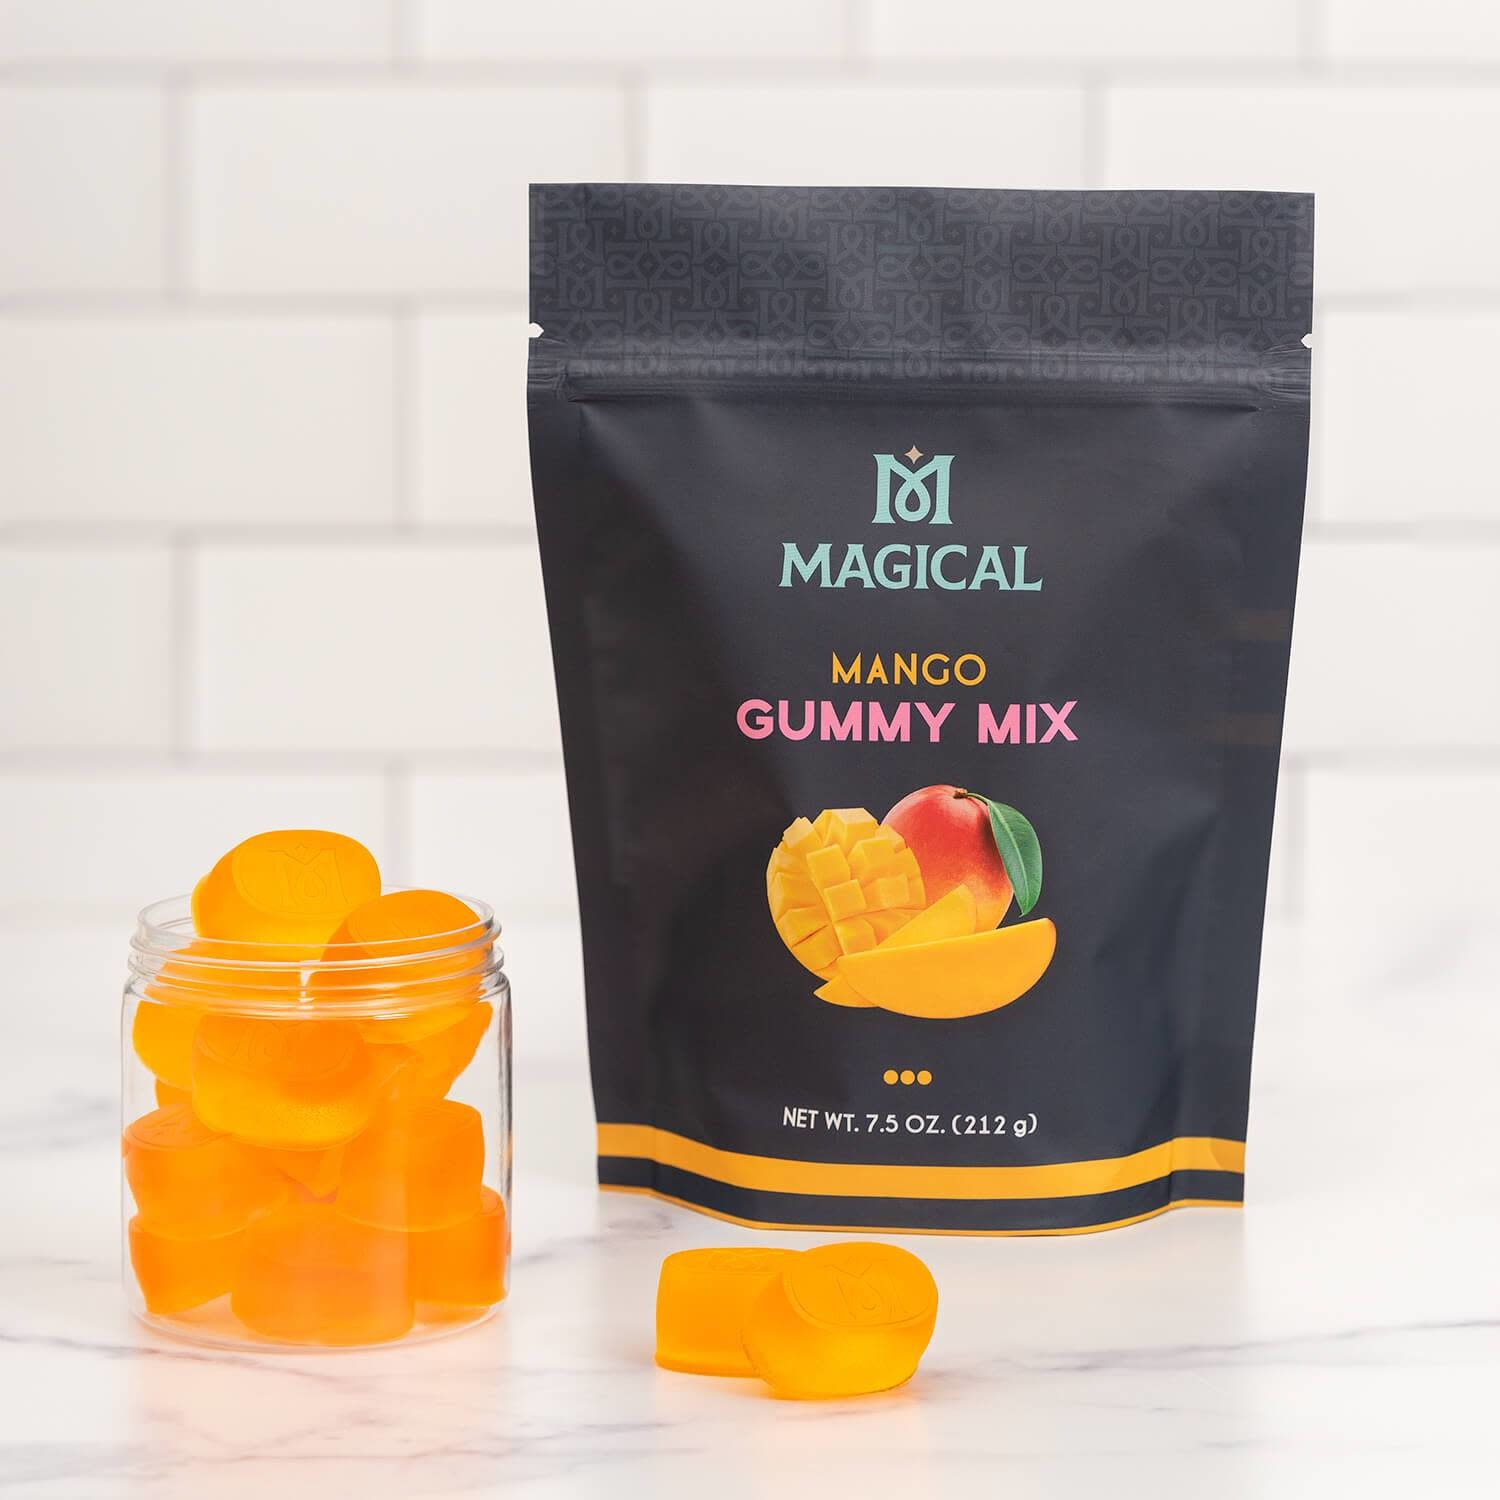 https://cdn.shoplightspeed.com/shops/612492/files/37700348/magical-butter-magicalbutter-mango-gummy-mix.jpg